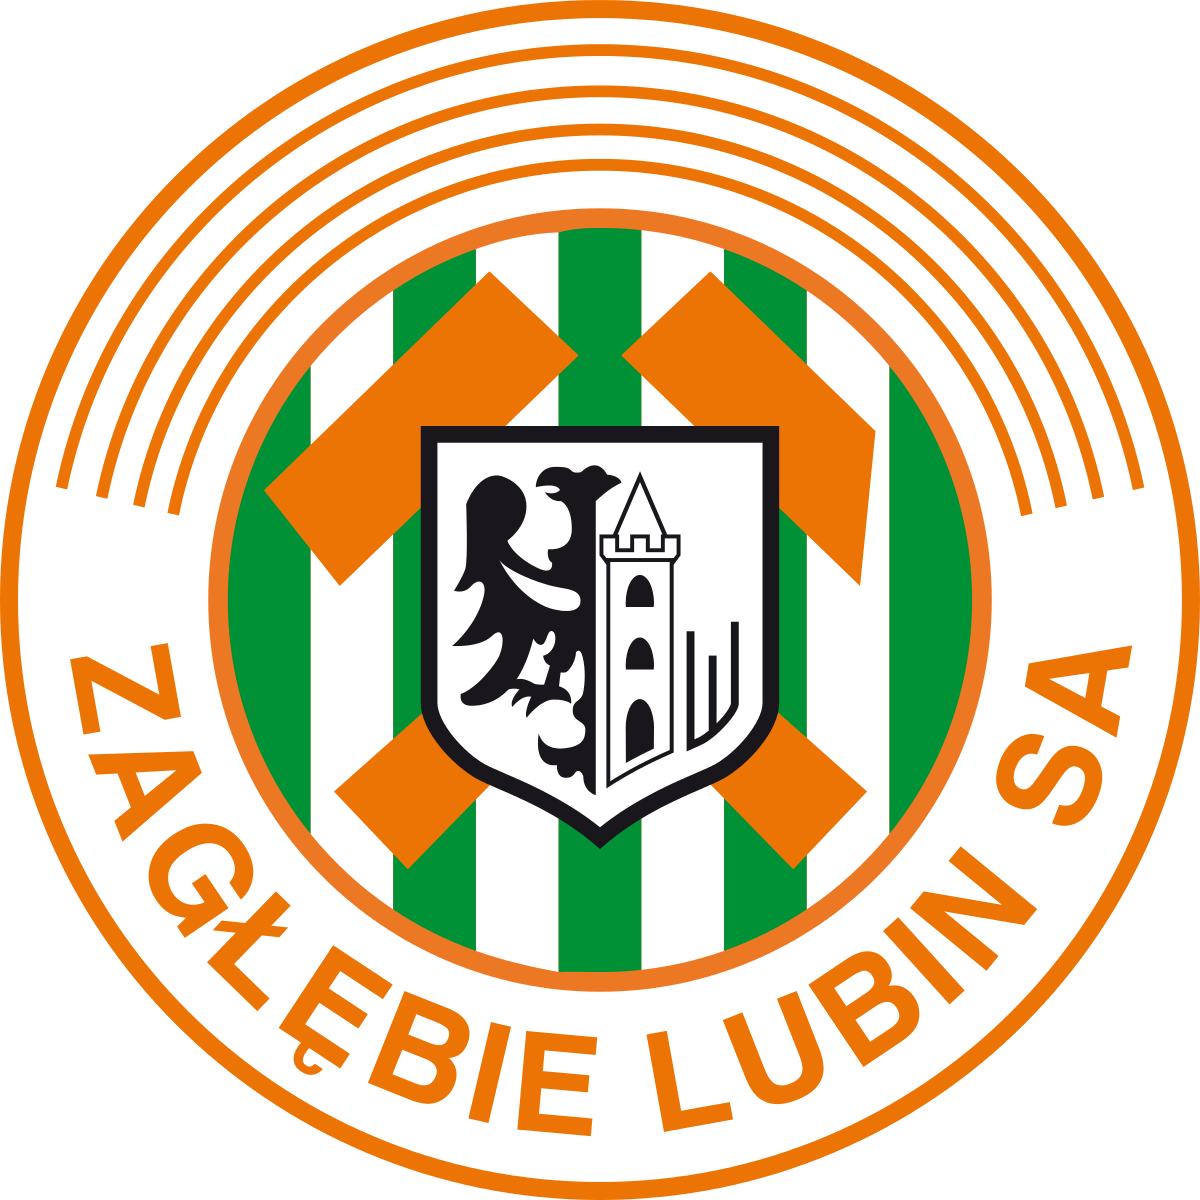   Zaglebie logo